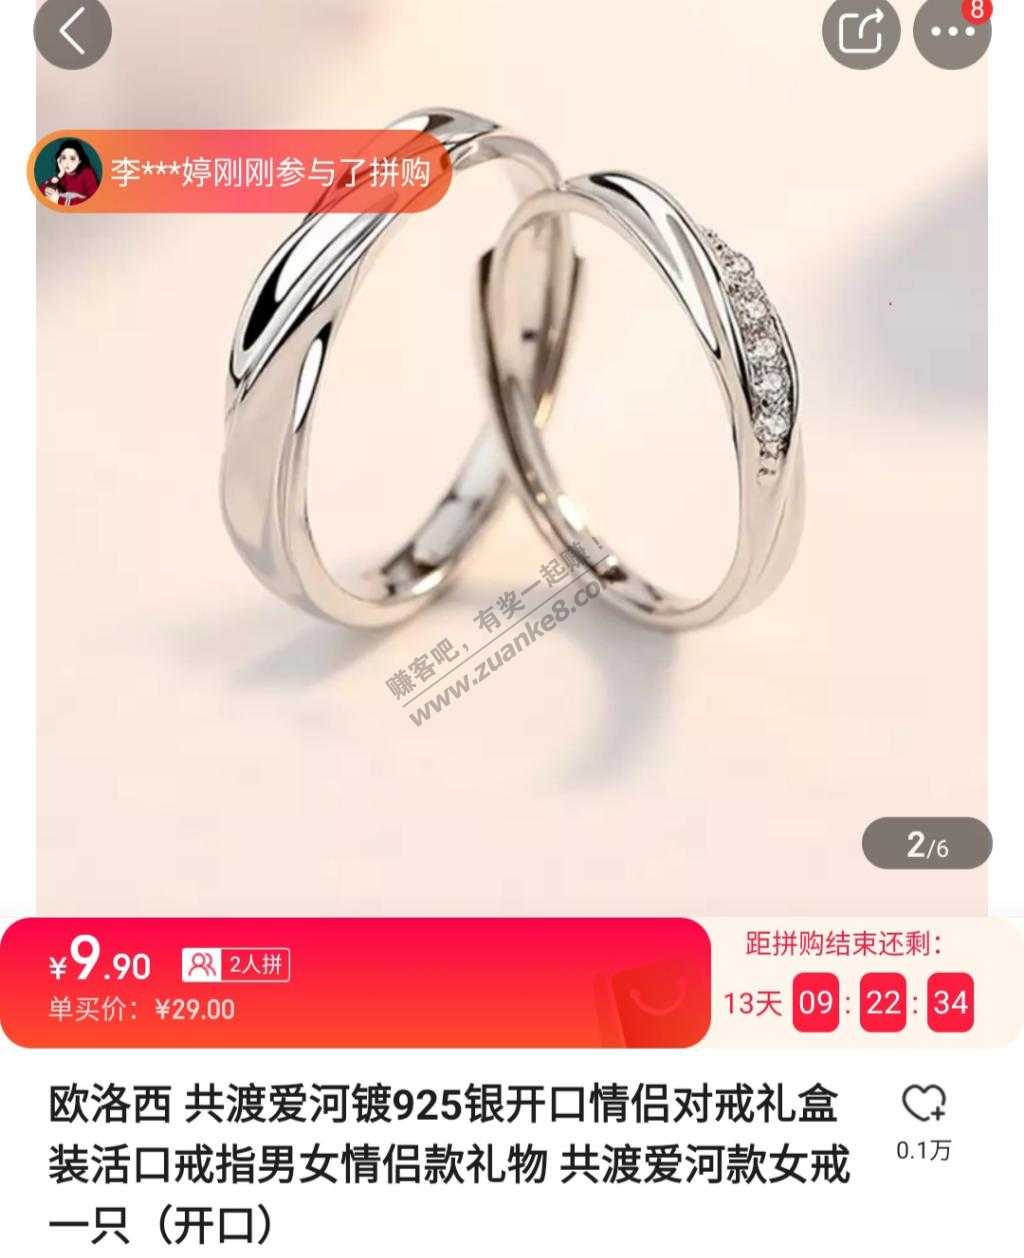 925银戒指价格-小米好歹搞个度黄金的-惠小助(52huixz.com)